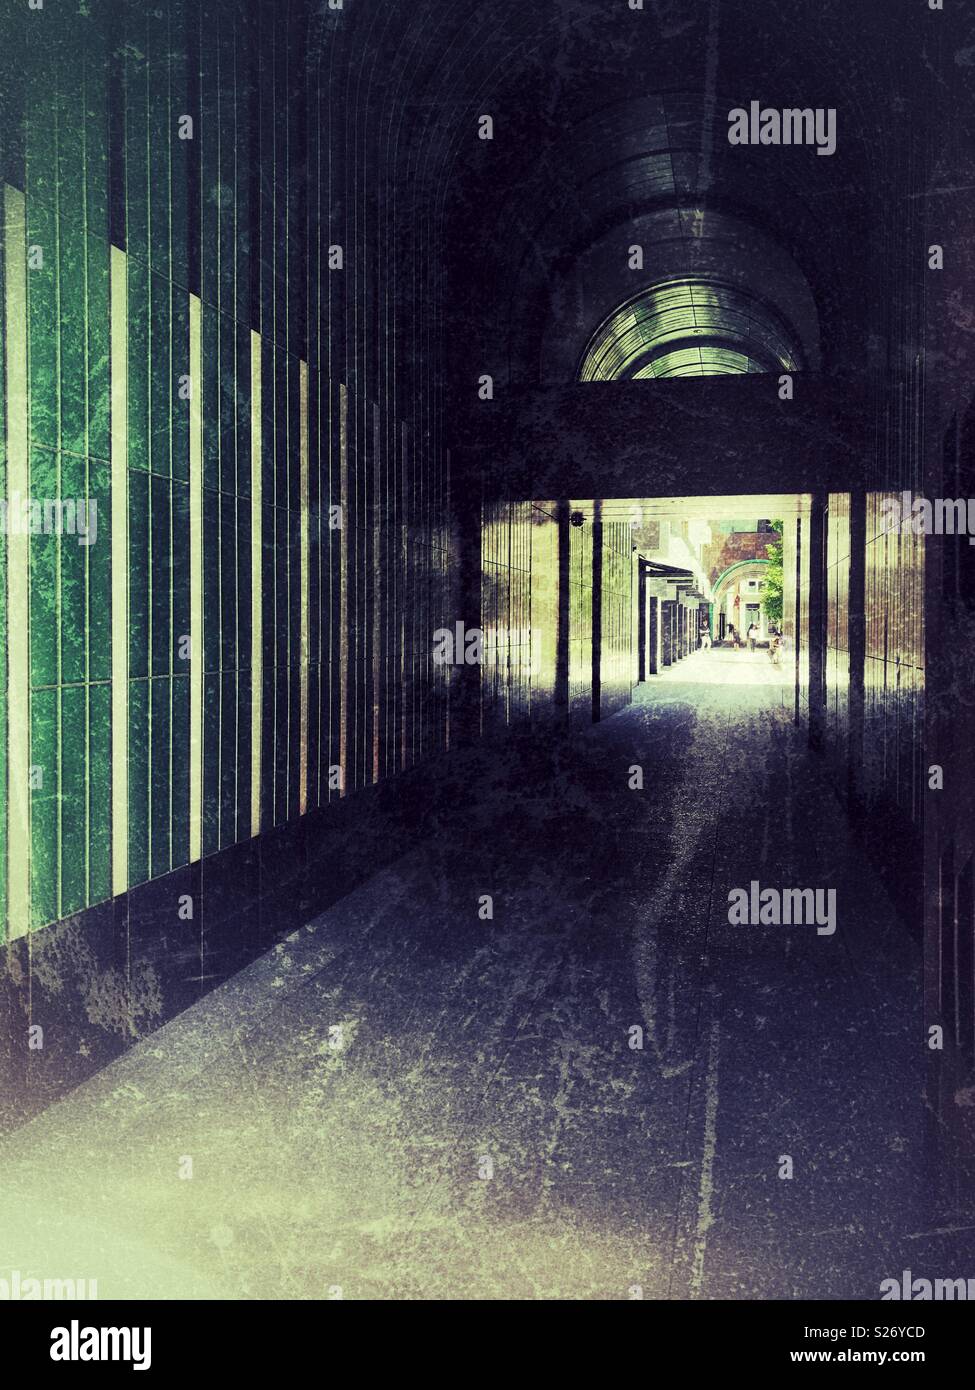 Grunge atmospheric dark arched passageway Stock Photo